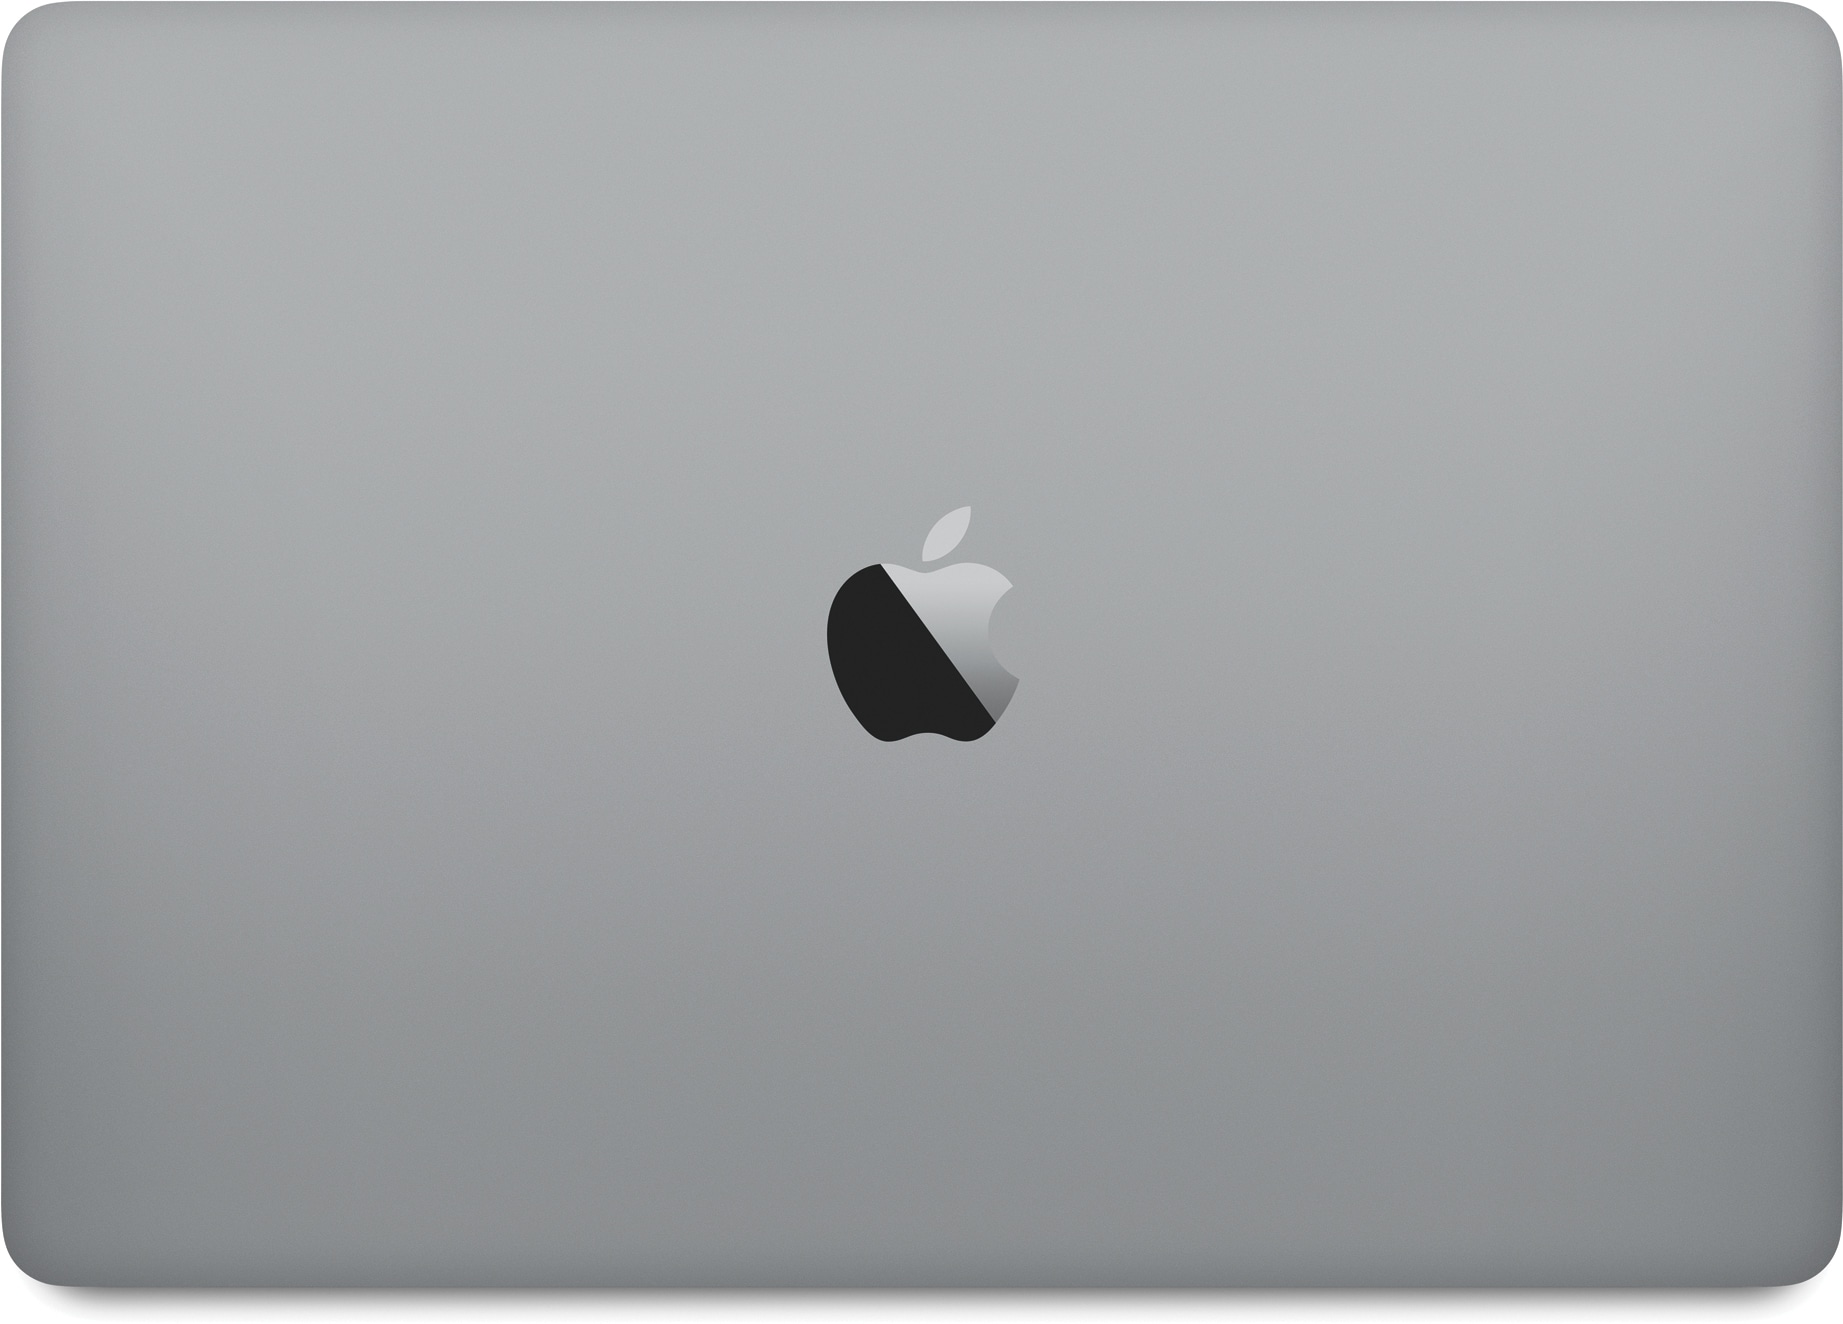 Uus kinnine kosmosehall MacBook Pro ülalt vaadatuna